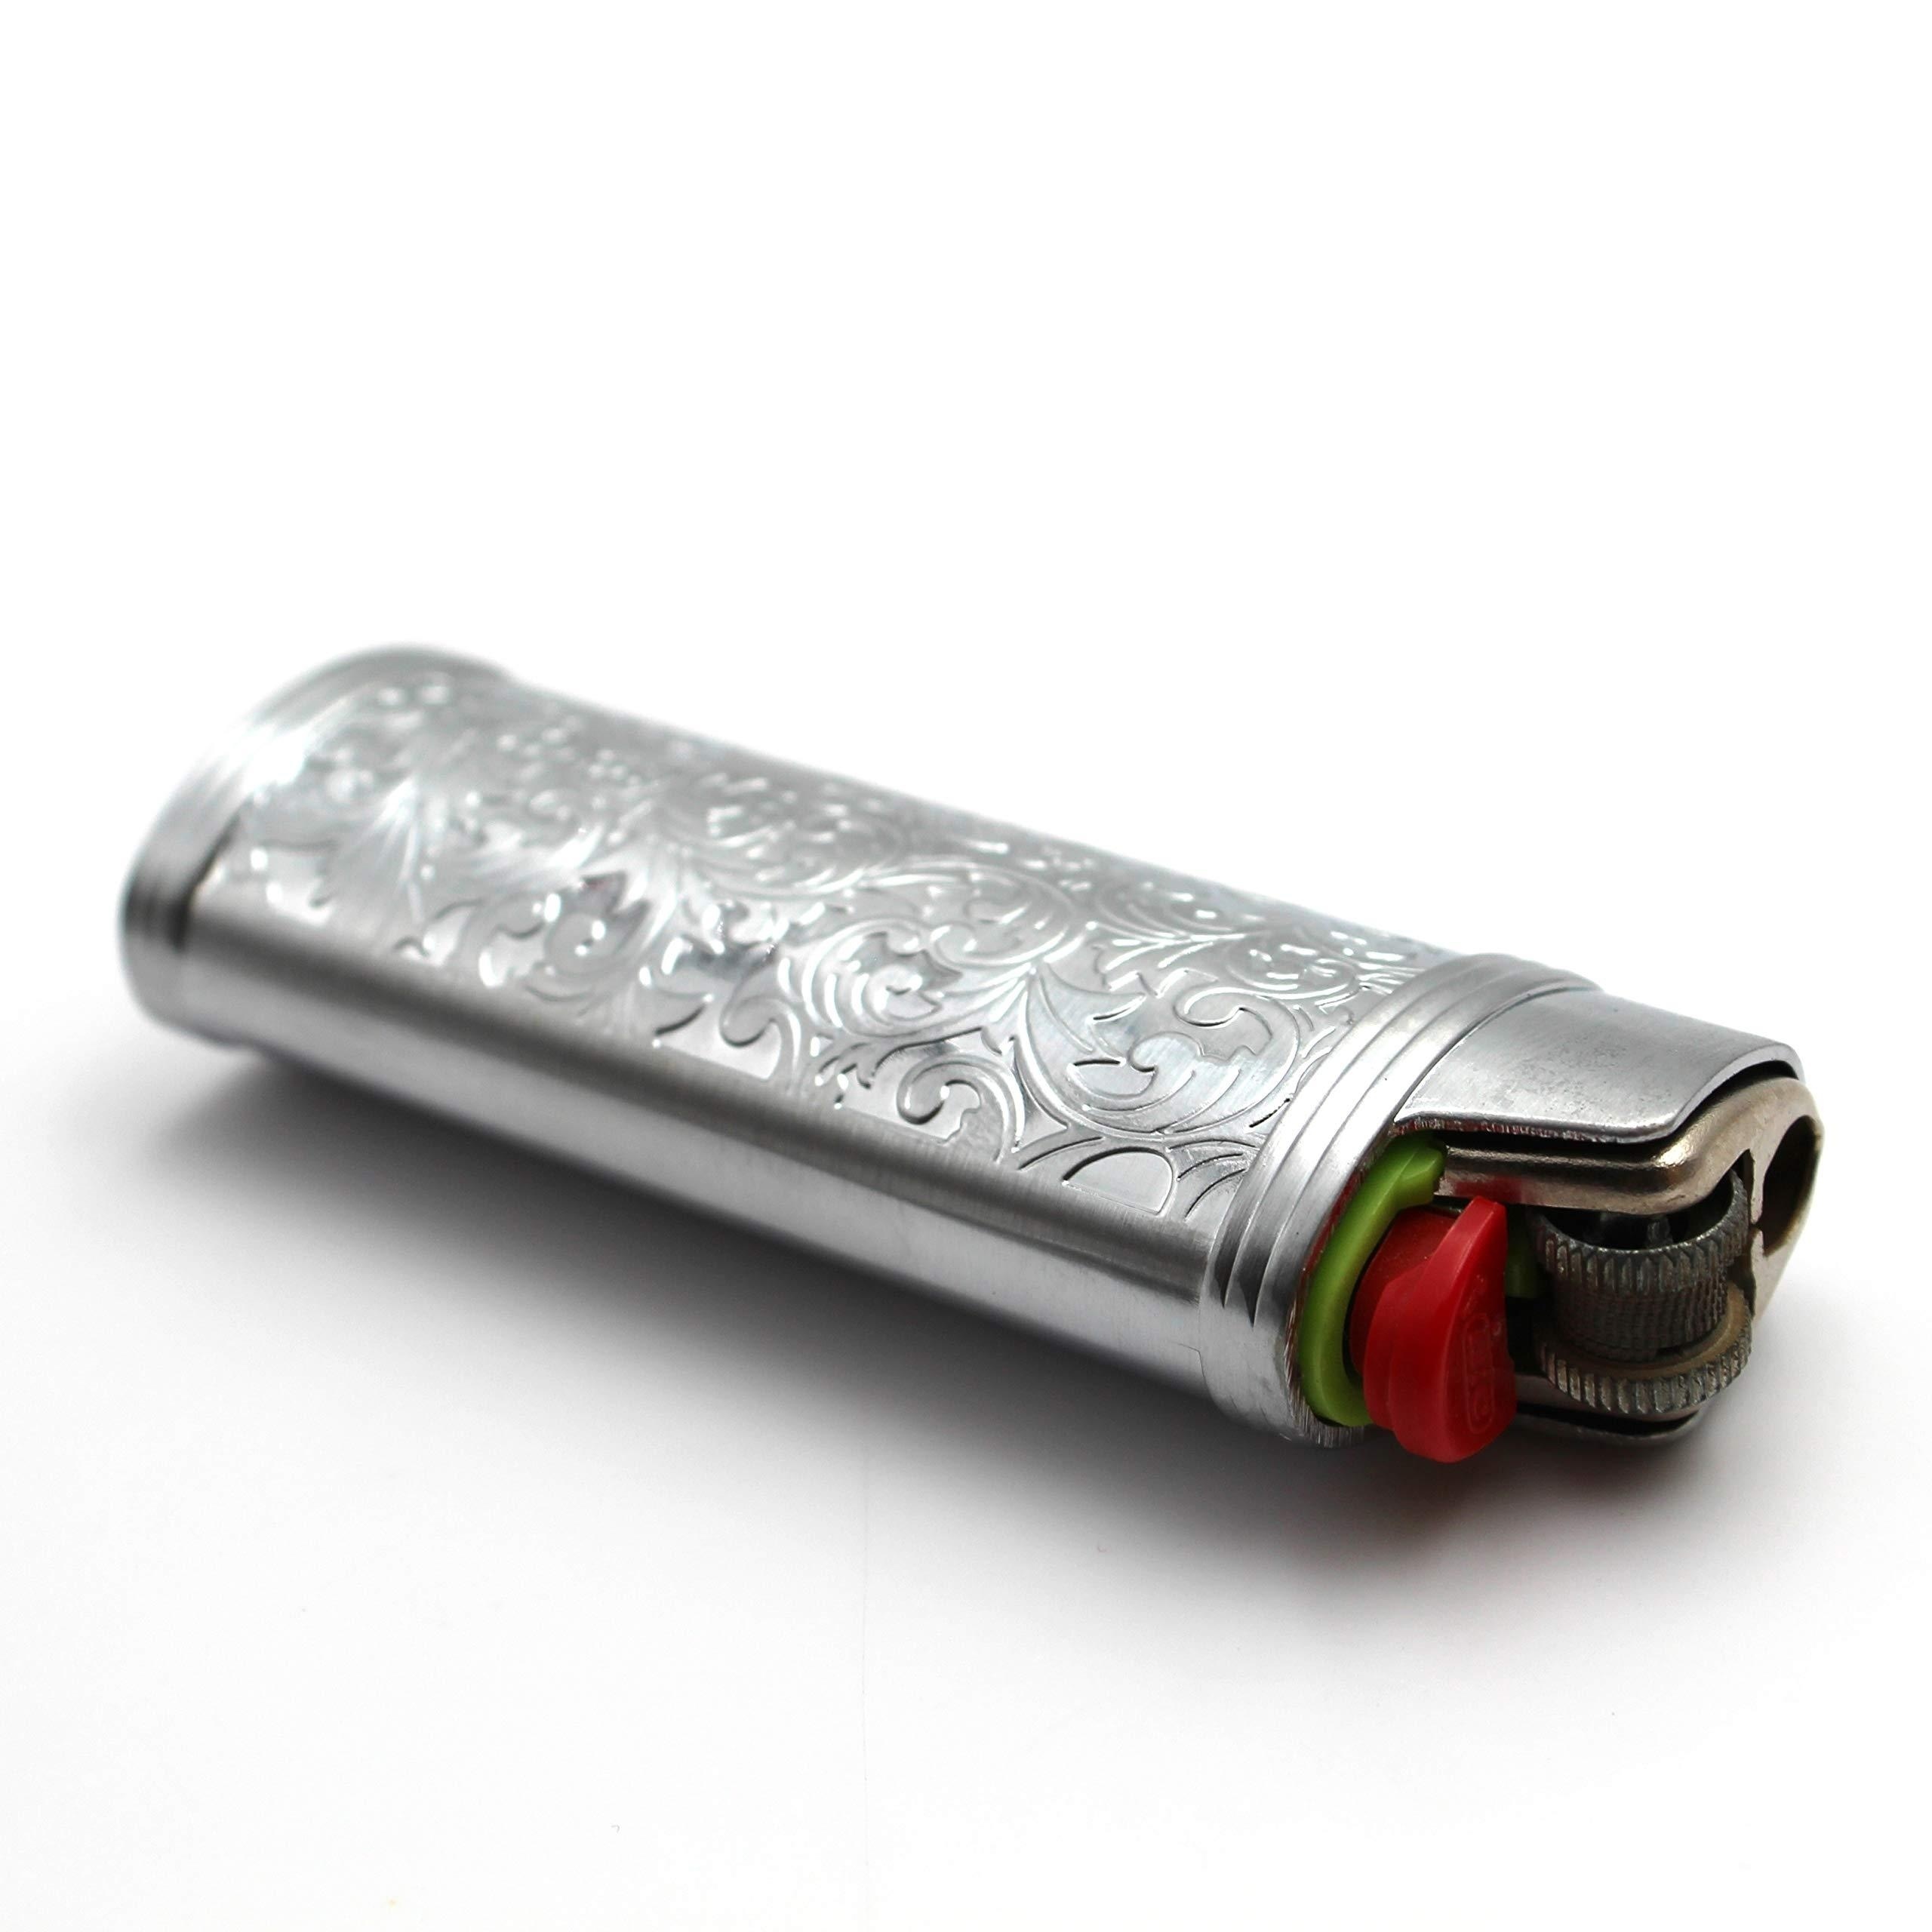 Silver Metal Bic Lighter Case